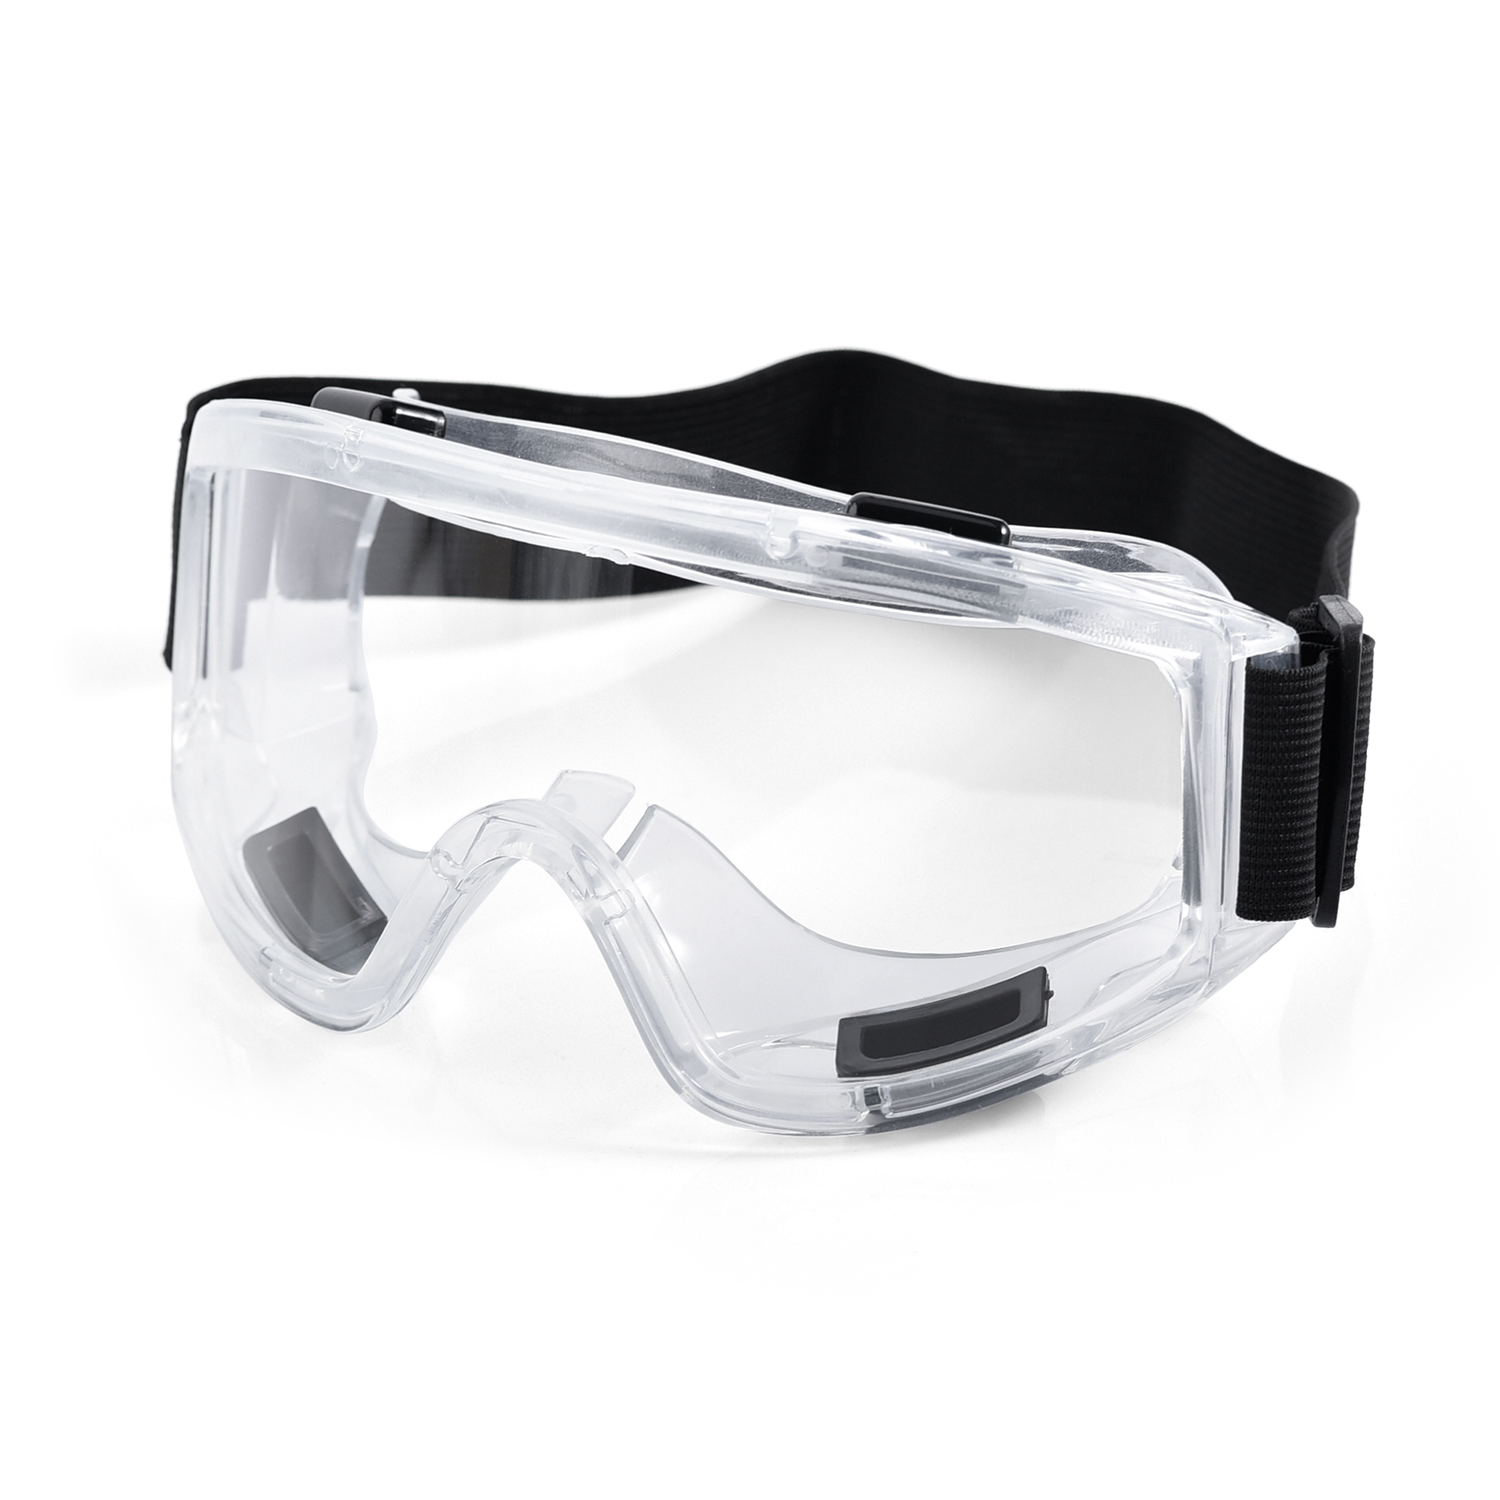 Occhiali protettivi trasparenti con lenti in PC KS503